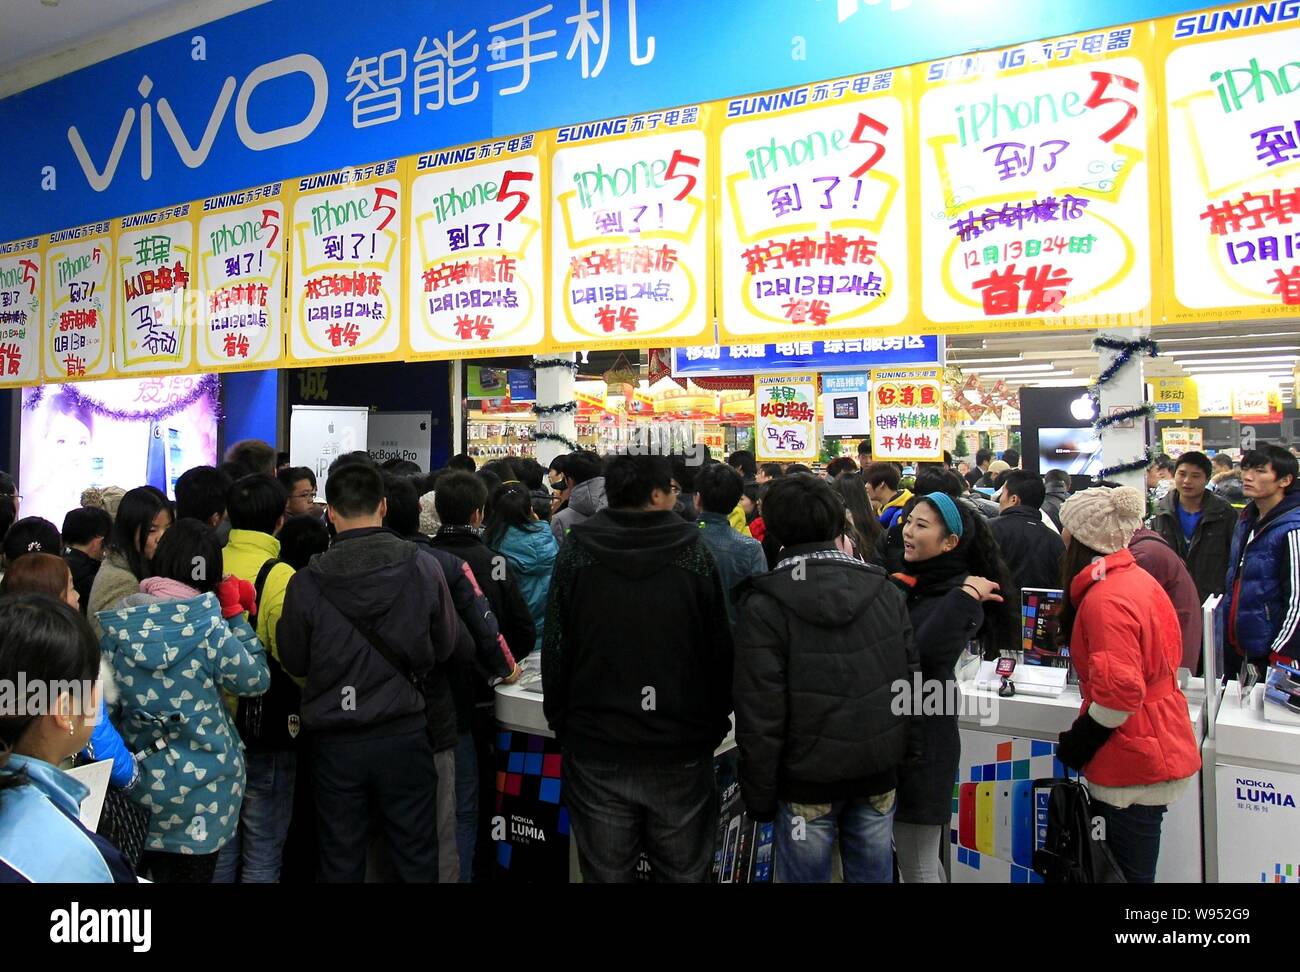 Los clientes chinos se alinean en una tienda para comprar Apple iPhone 5 smartphones en la ciudad de Xian, en el noroeste de la provincia de Shaanxi, China el 14 de diciembre de 2012. La China Foto de stock